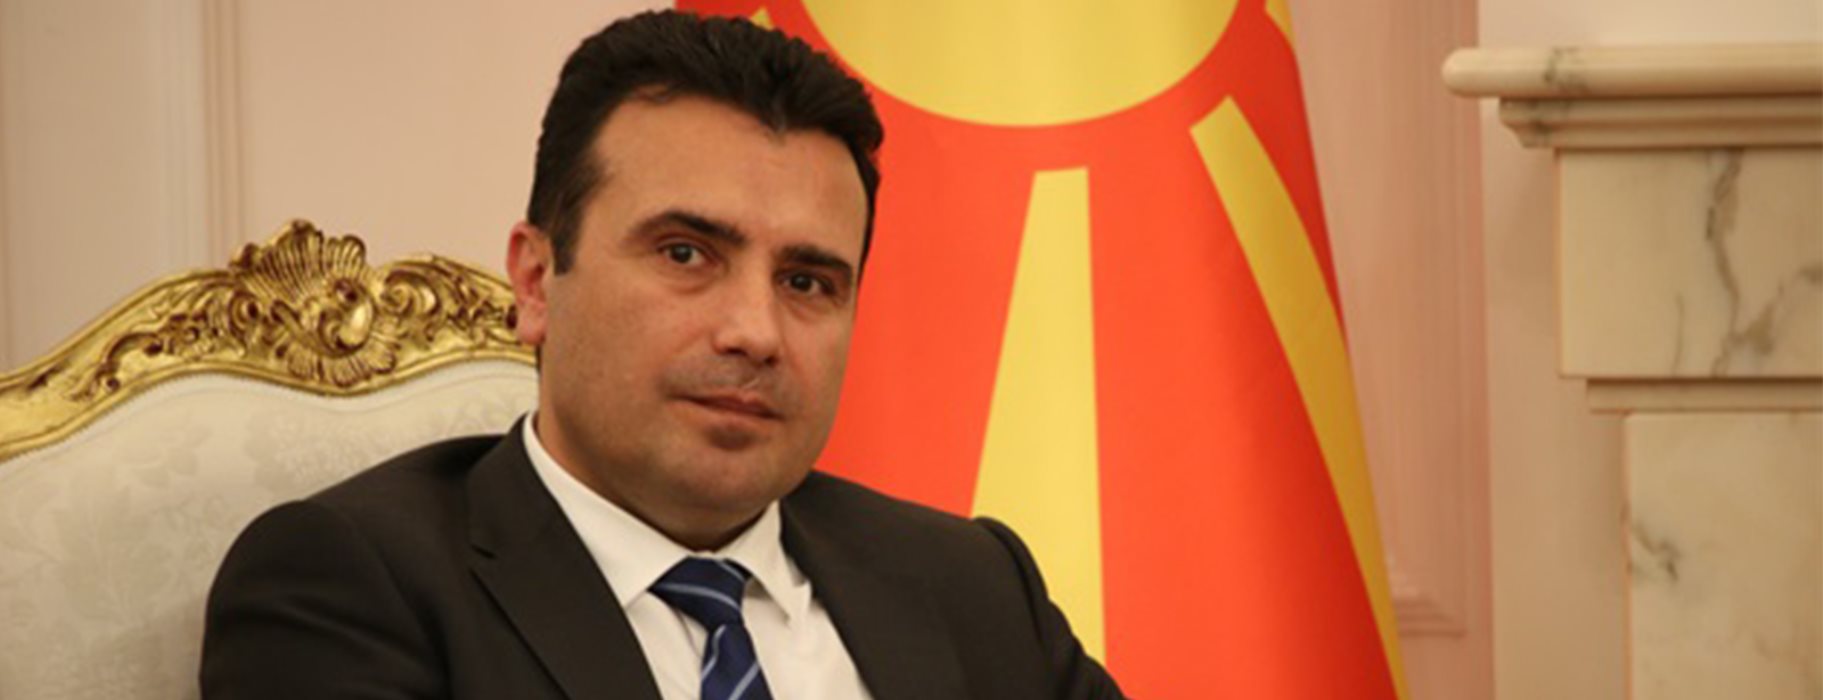 Ζ.Ζάεφ: «Η μακεδονική γλώσσα και η μακεδονική ταυτότητα δεν υπόκεινται σε διαπραγματεύσεις»